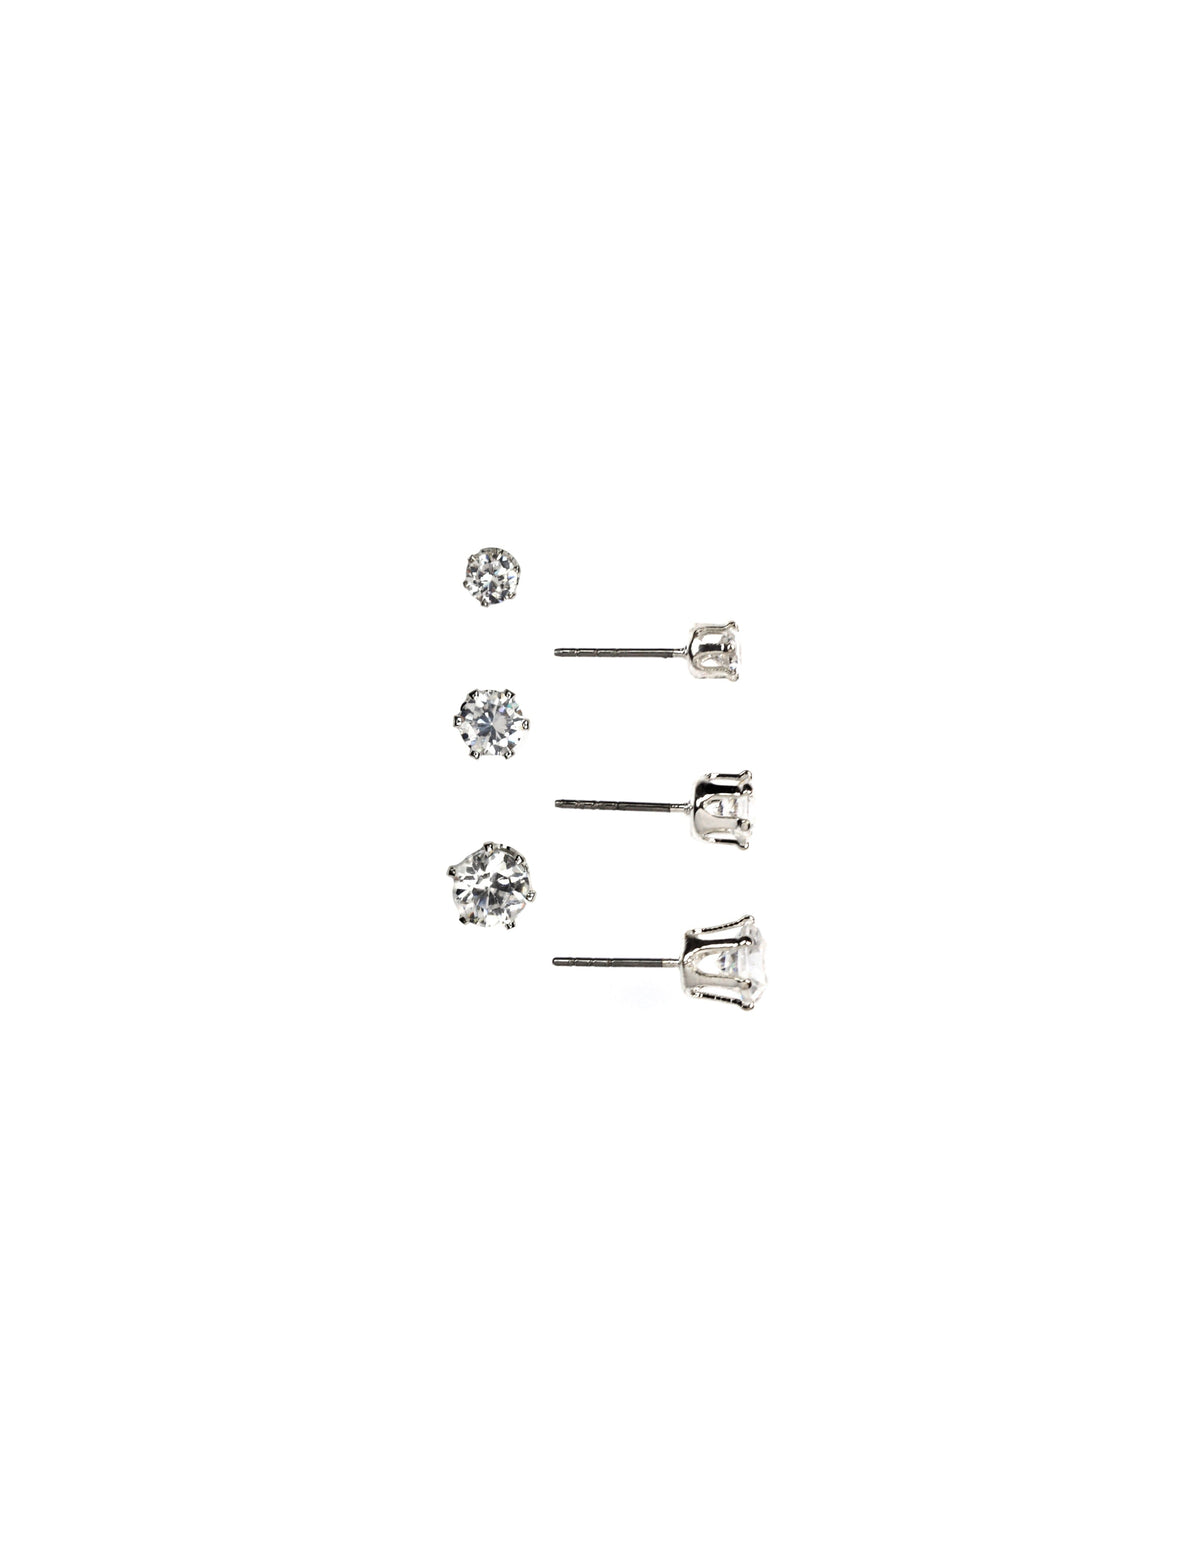 Anne Klein Silver Tone Crystal Silver CZ Stud Earrings